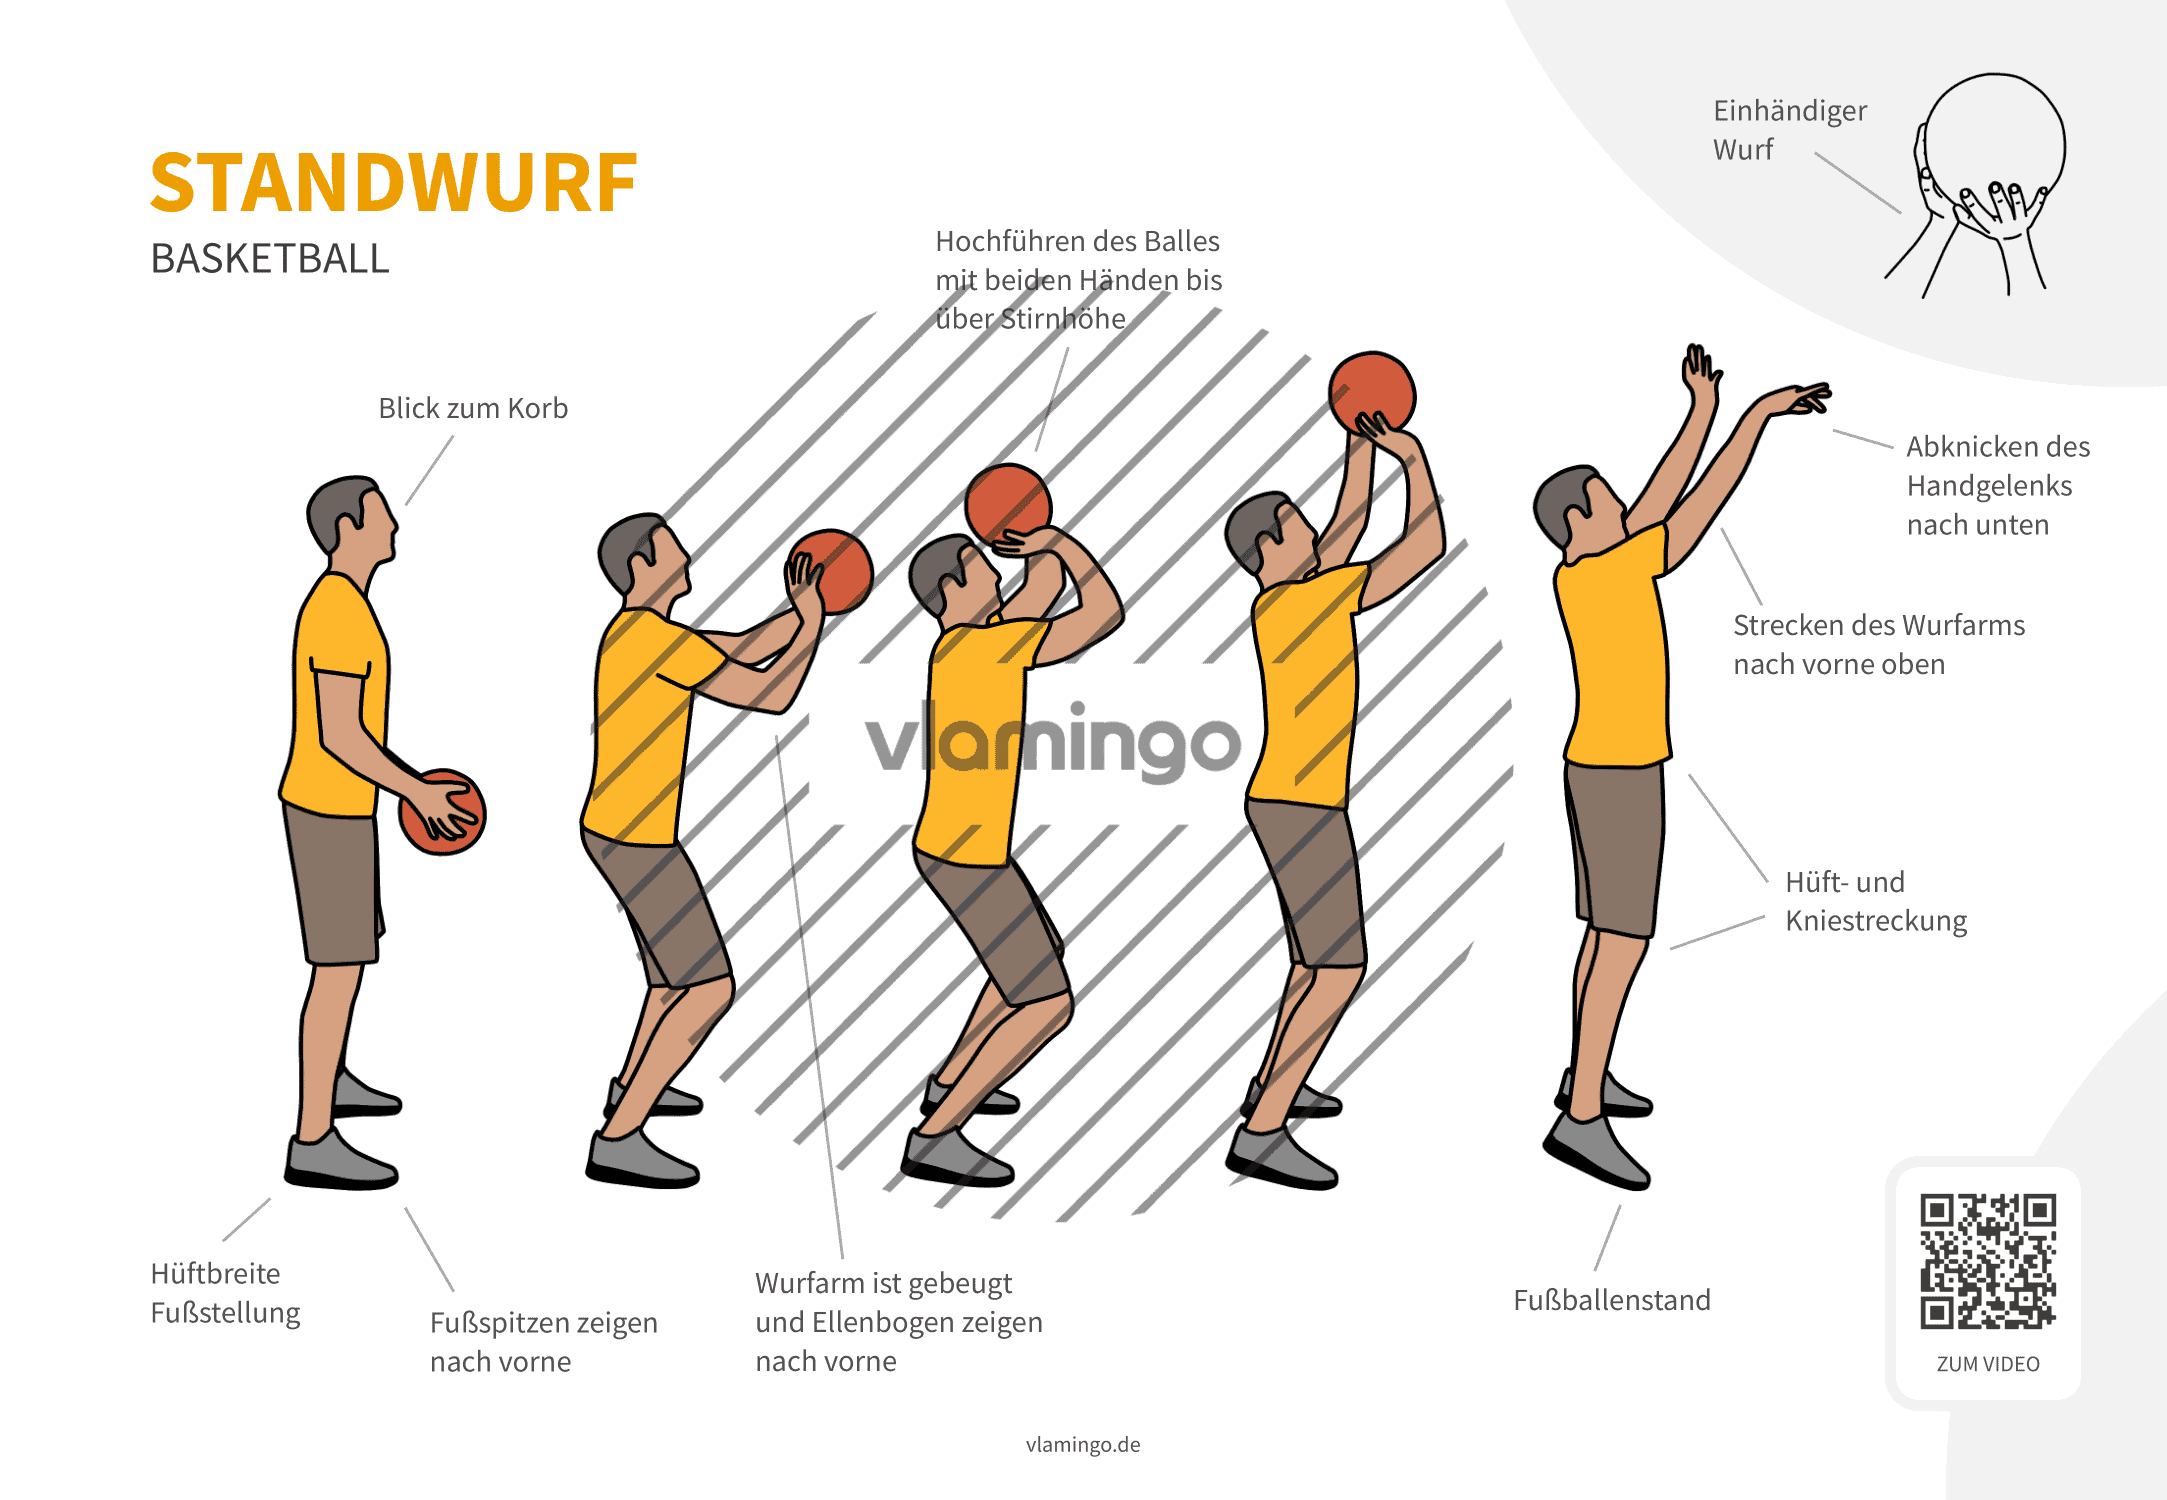 Standwurf - Basketball